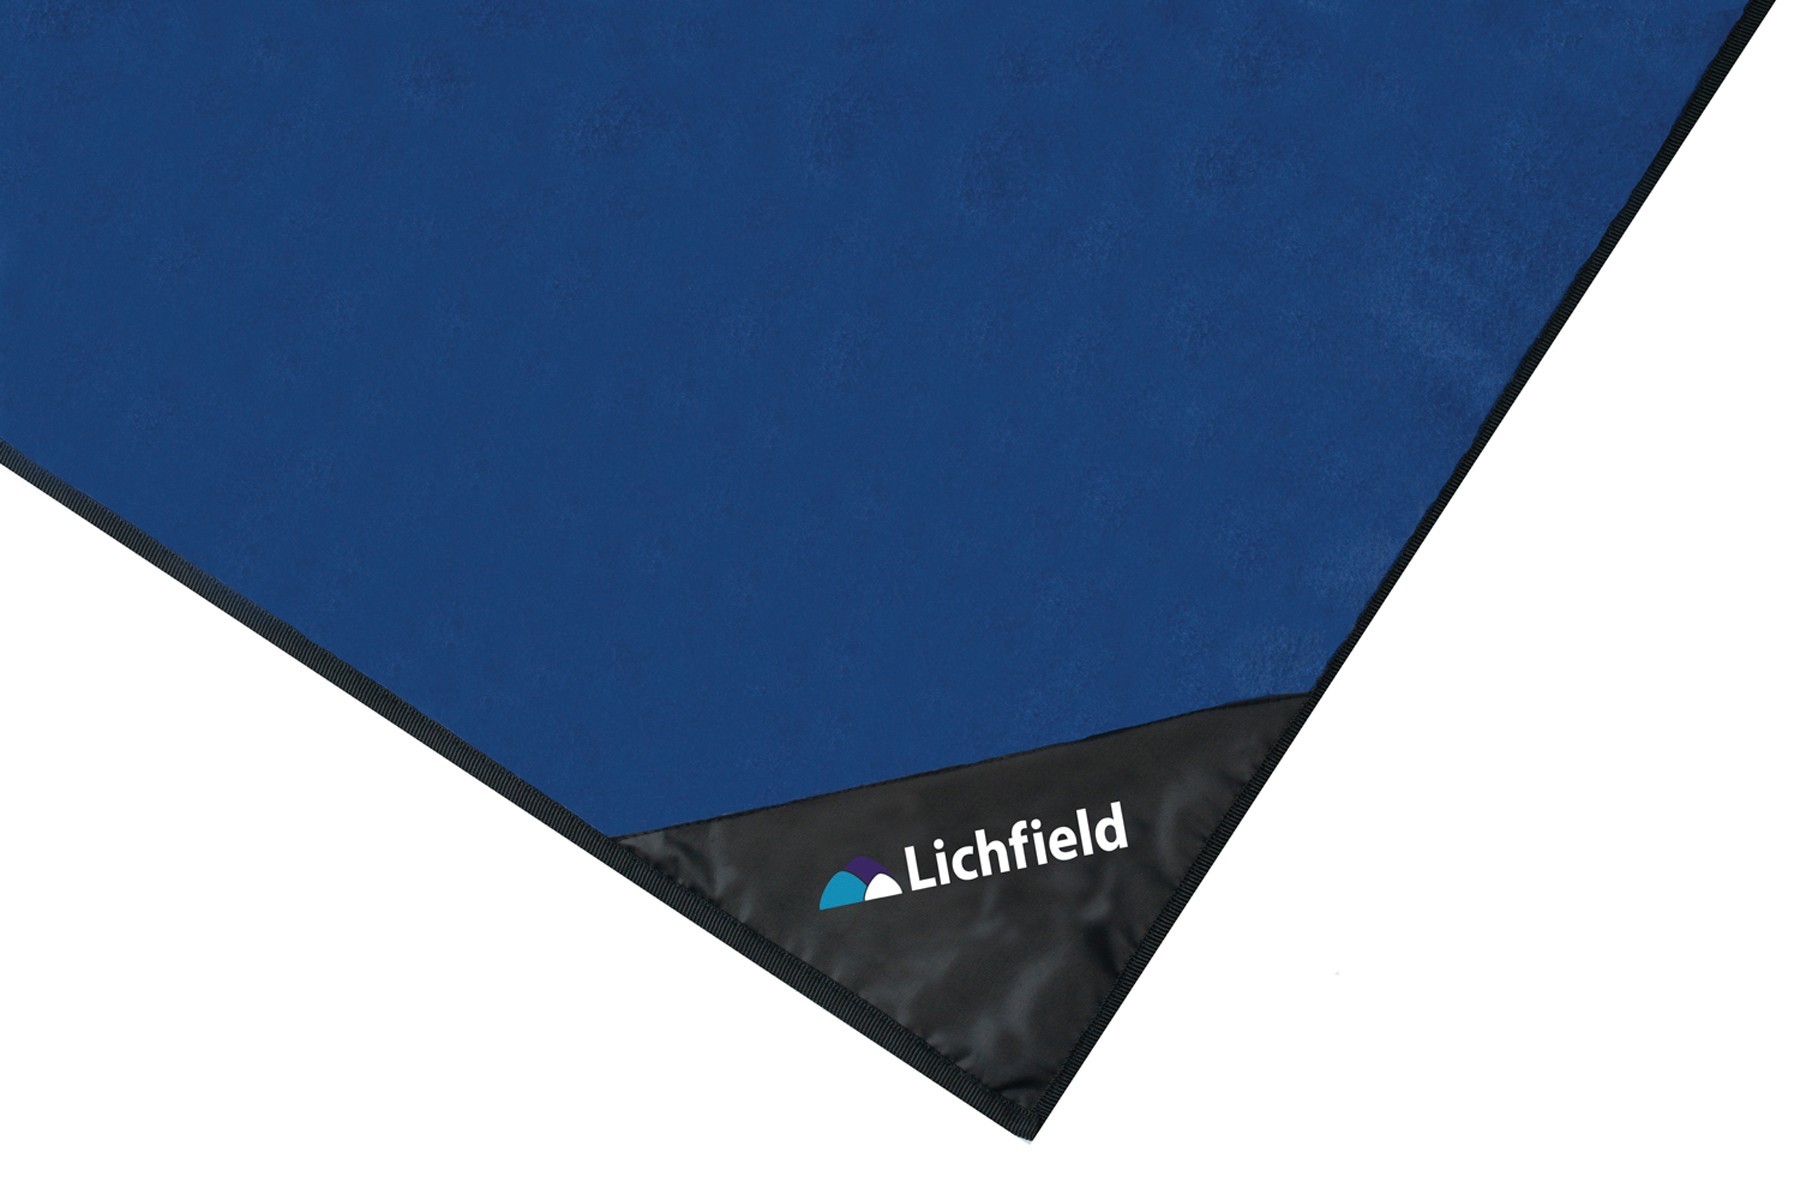 Lichfield Tent Carpets by Lichfield